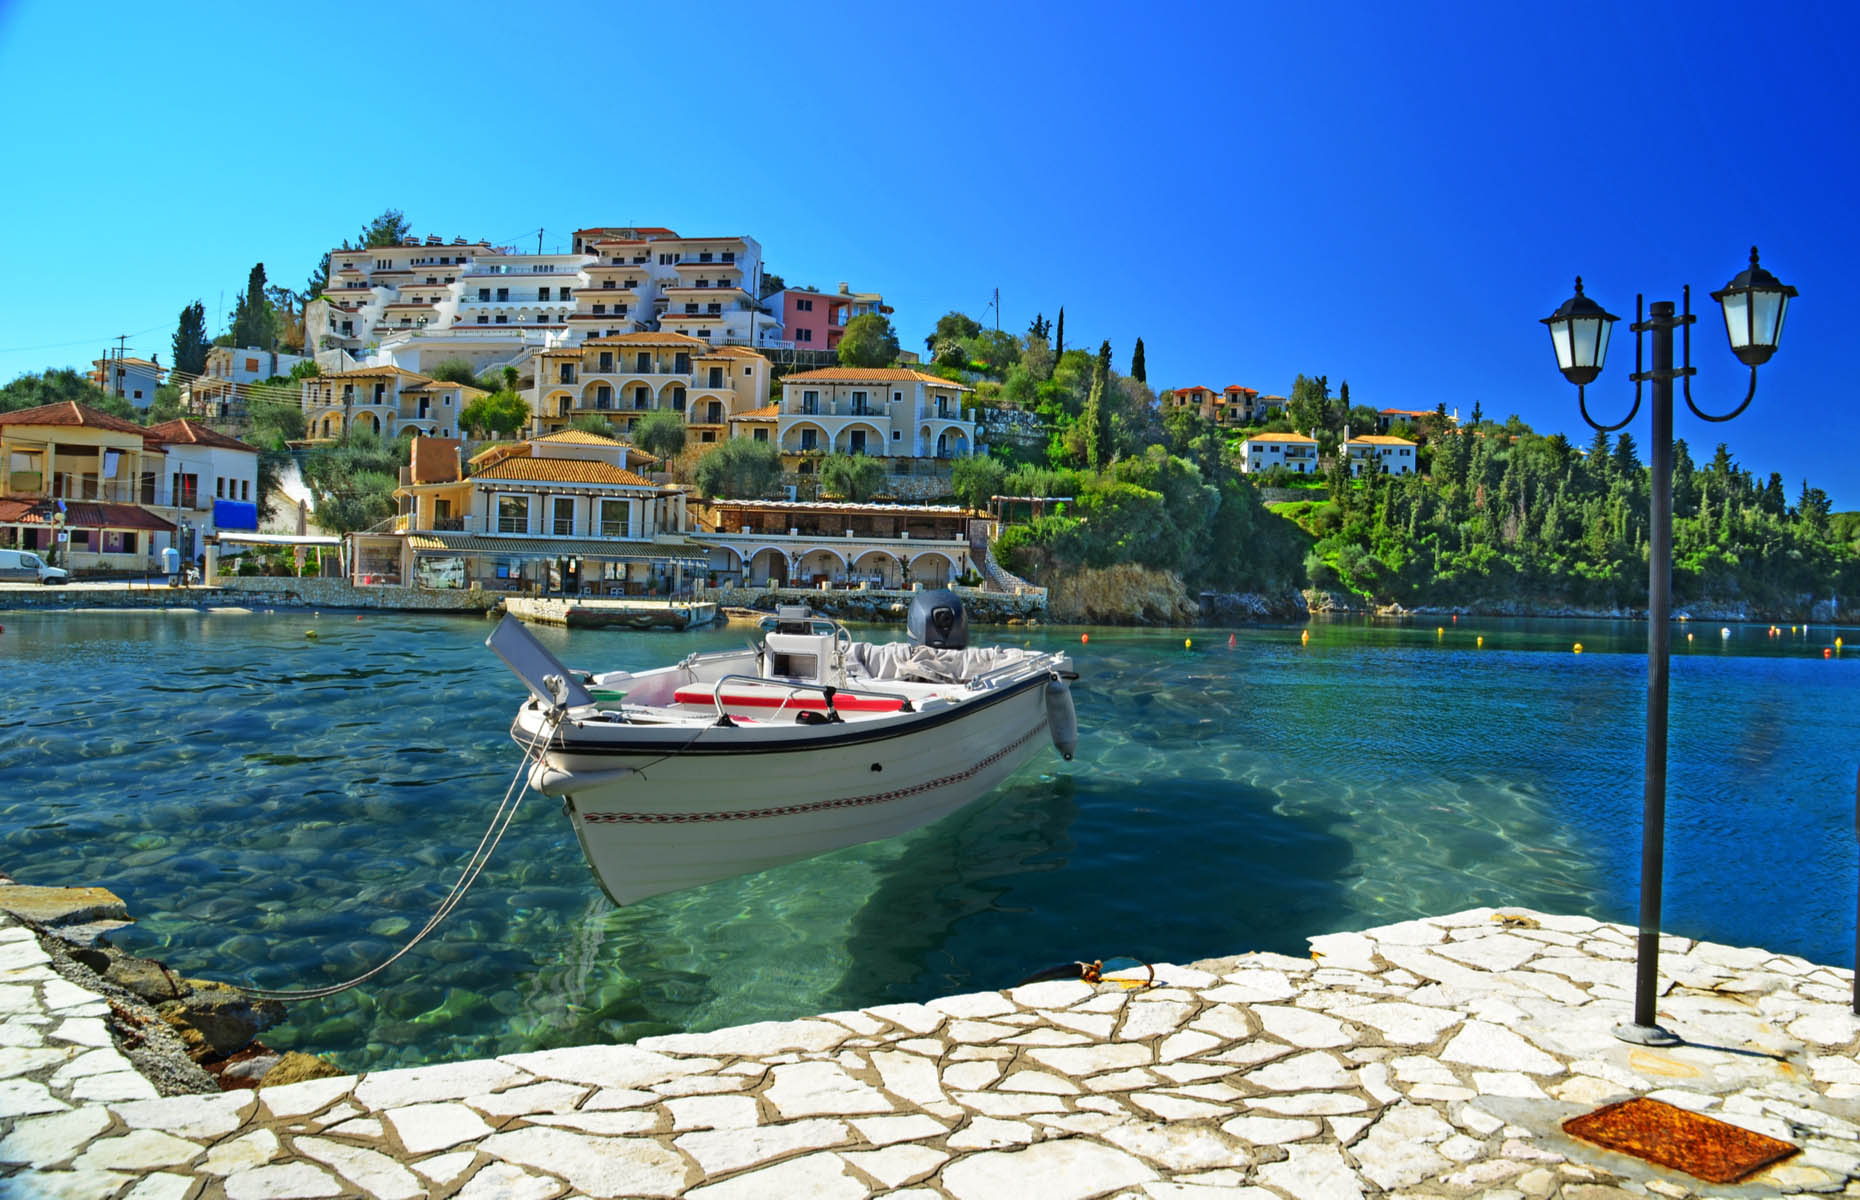 Syvota, Greece (Image: kostasgr/Shutterstock)